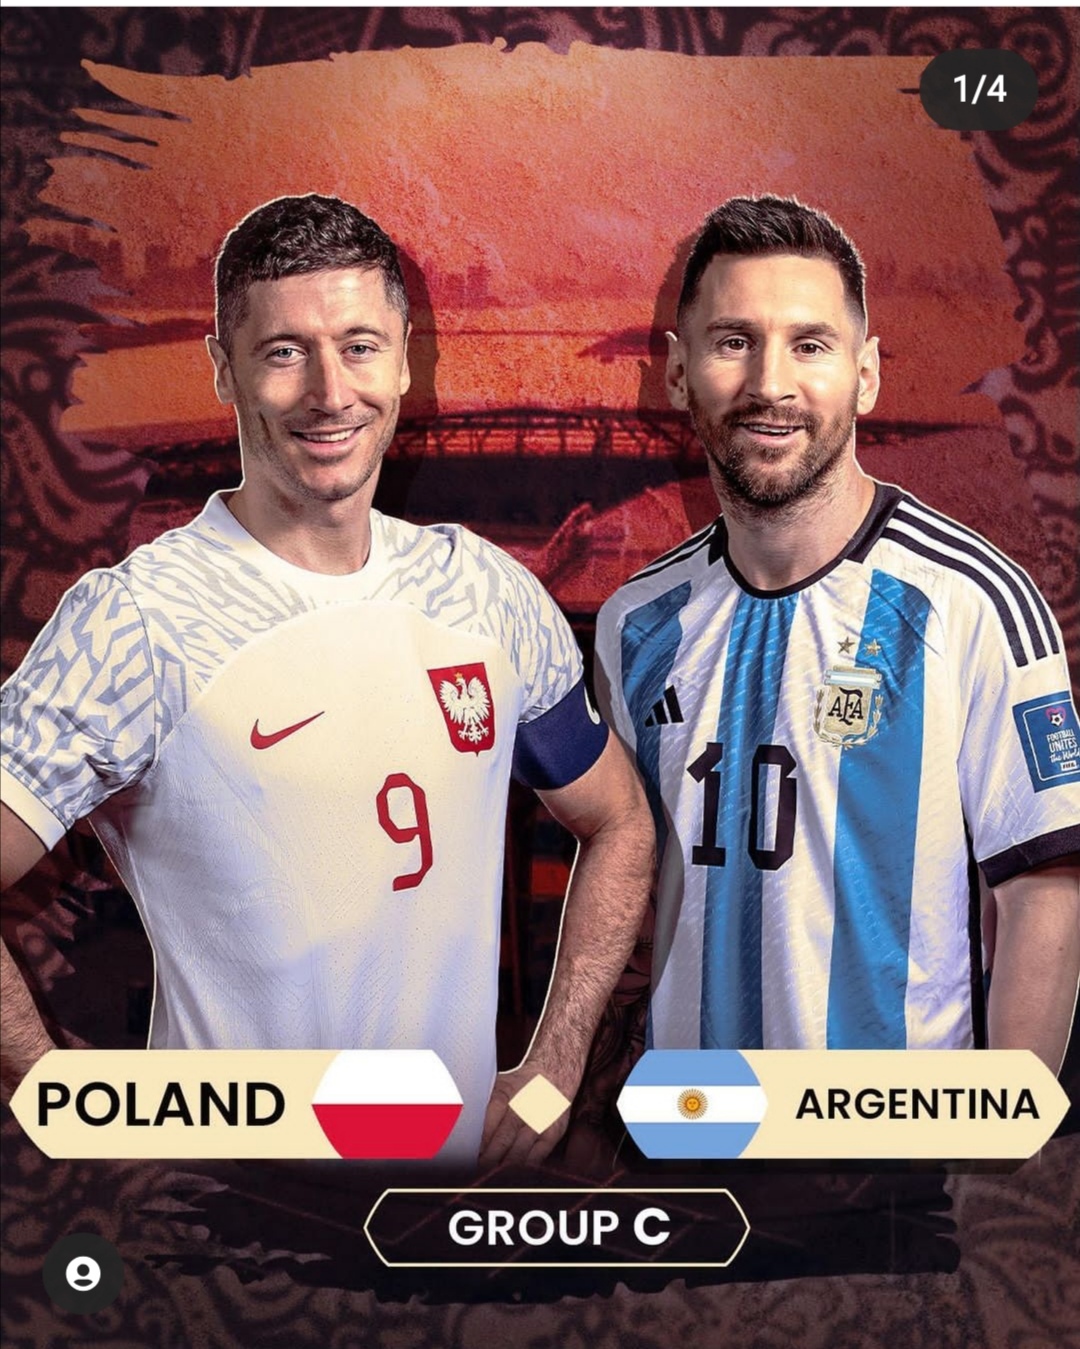 Аргентина против Польши. Мессия выполнима?